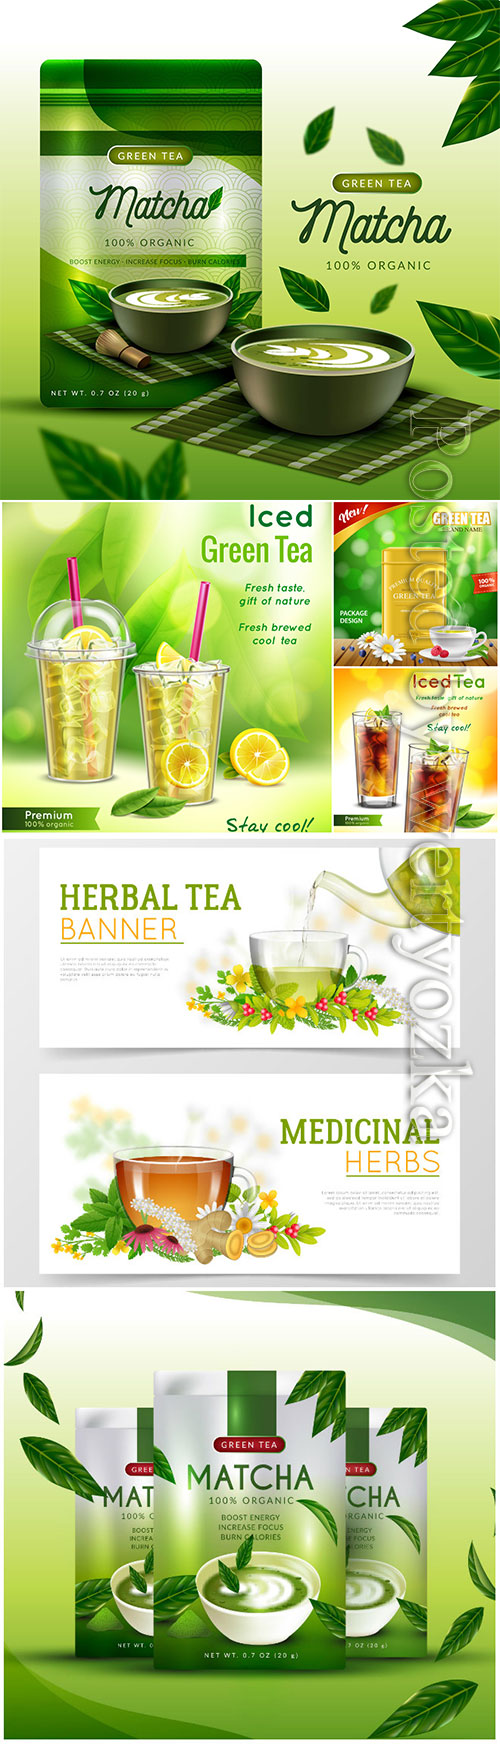 Realistic matcha tea ad concept vector illustration